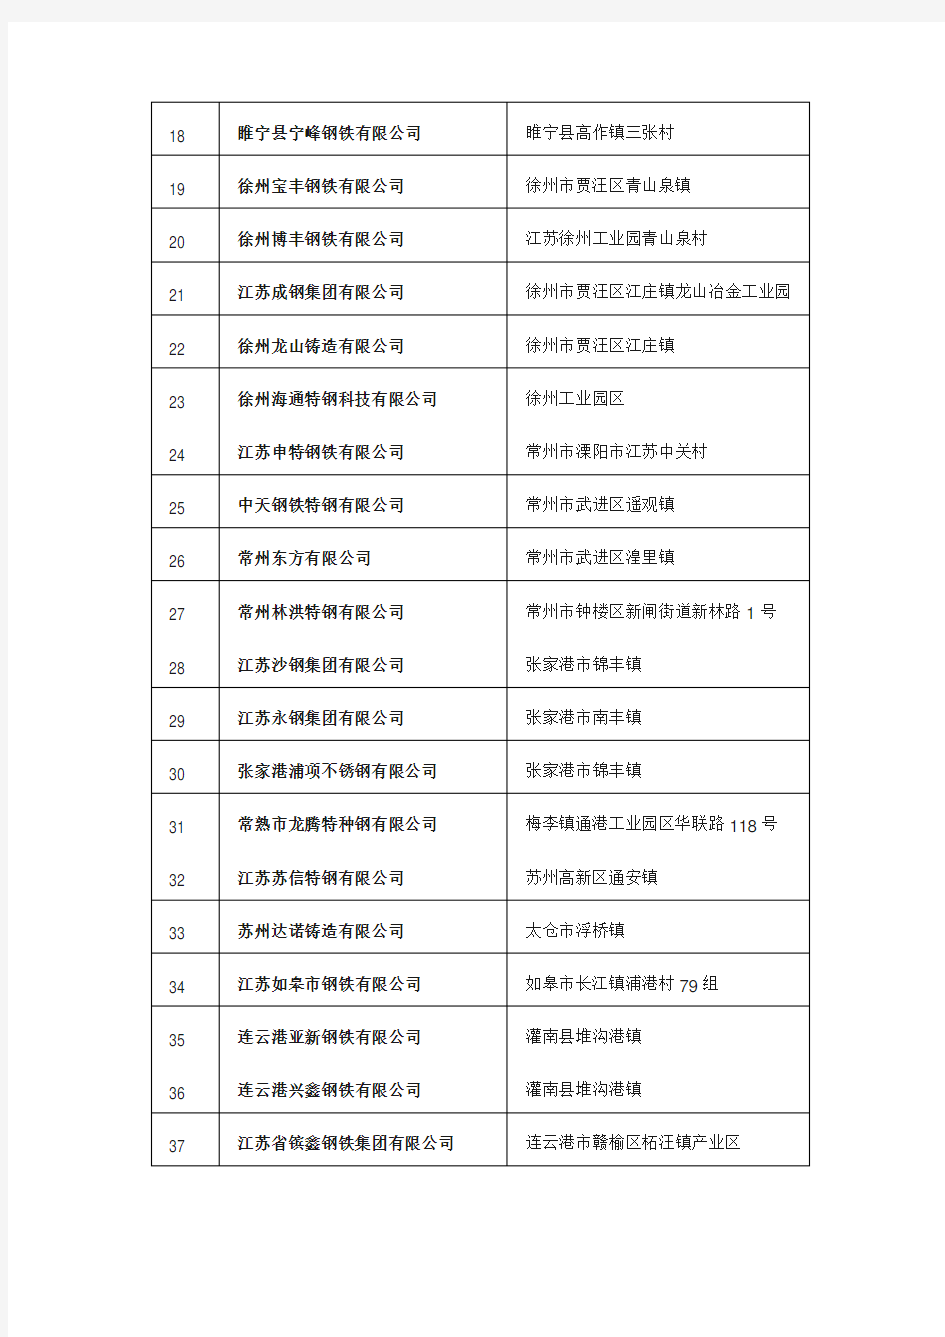 江苏省钢铁企业名单